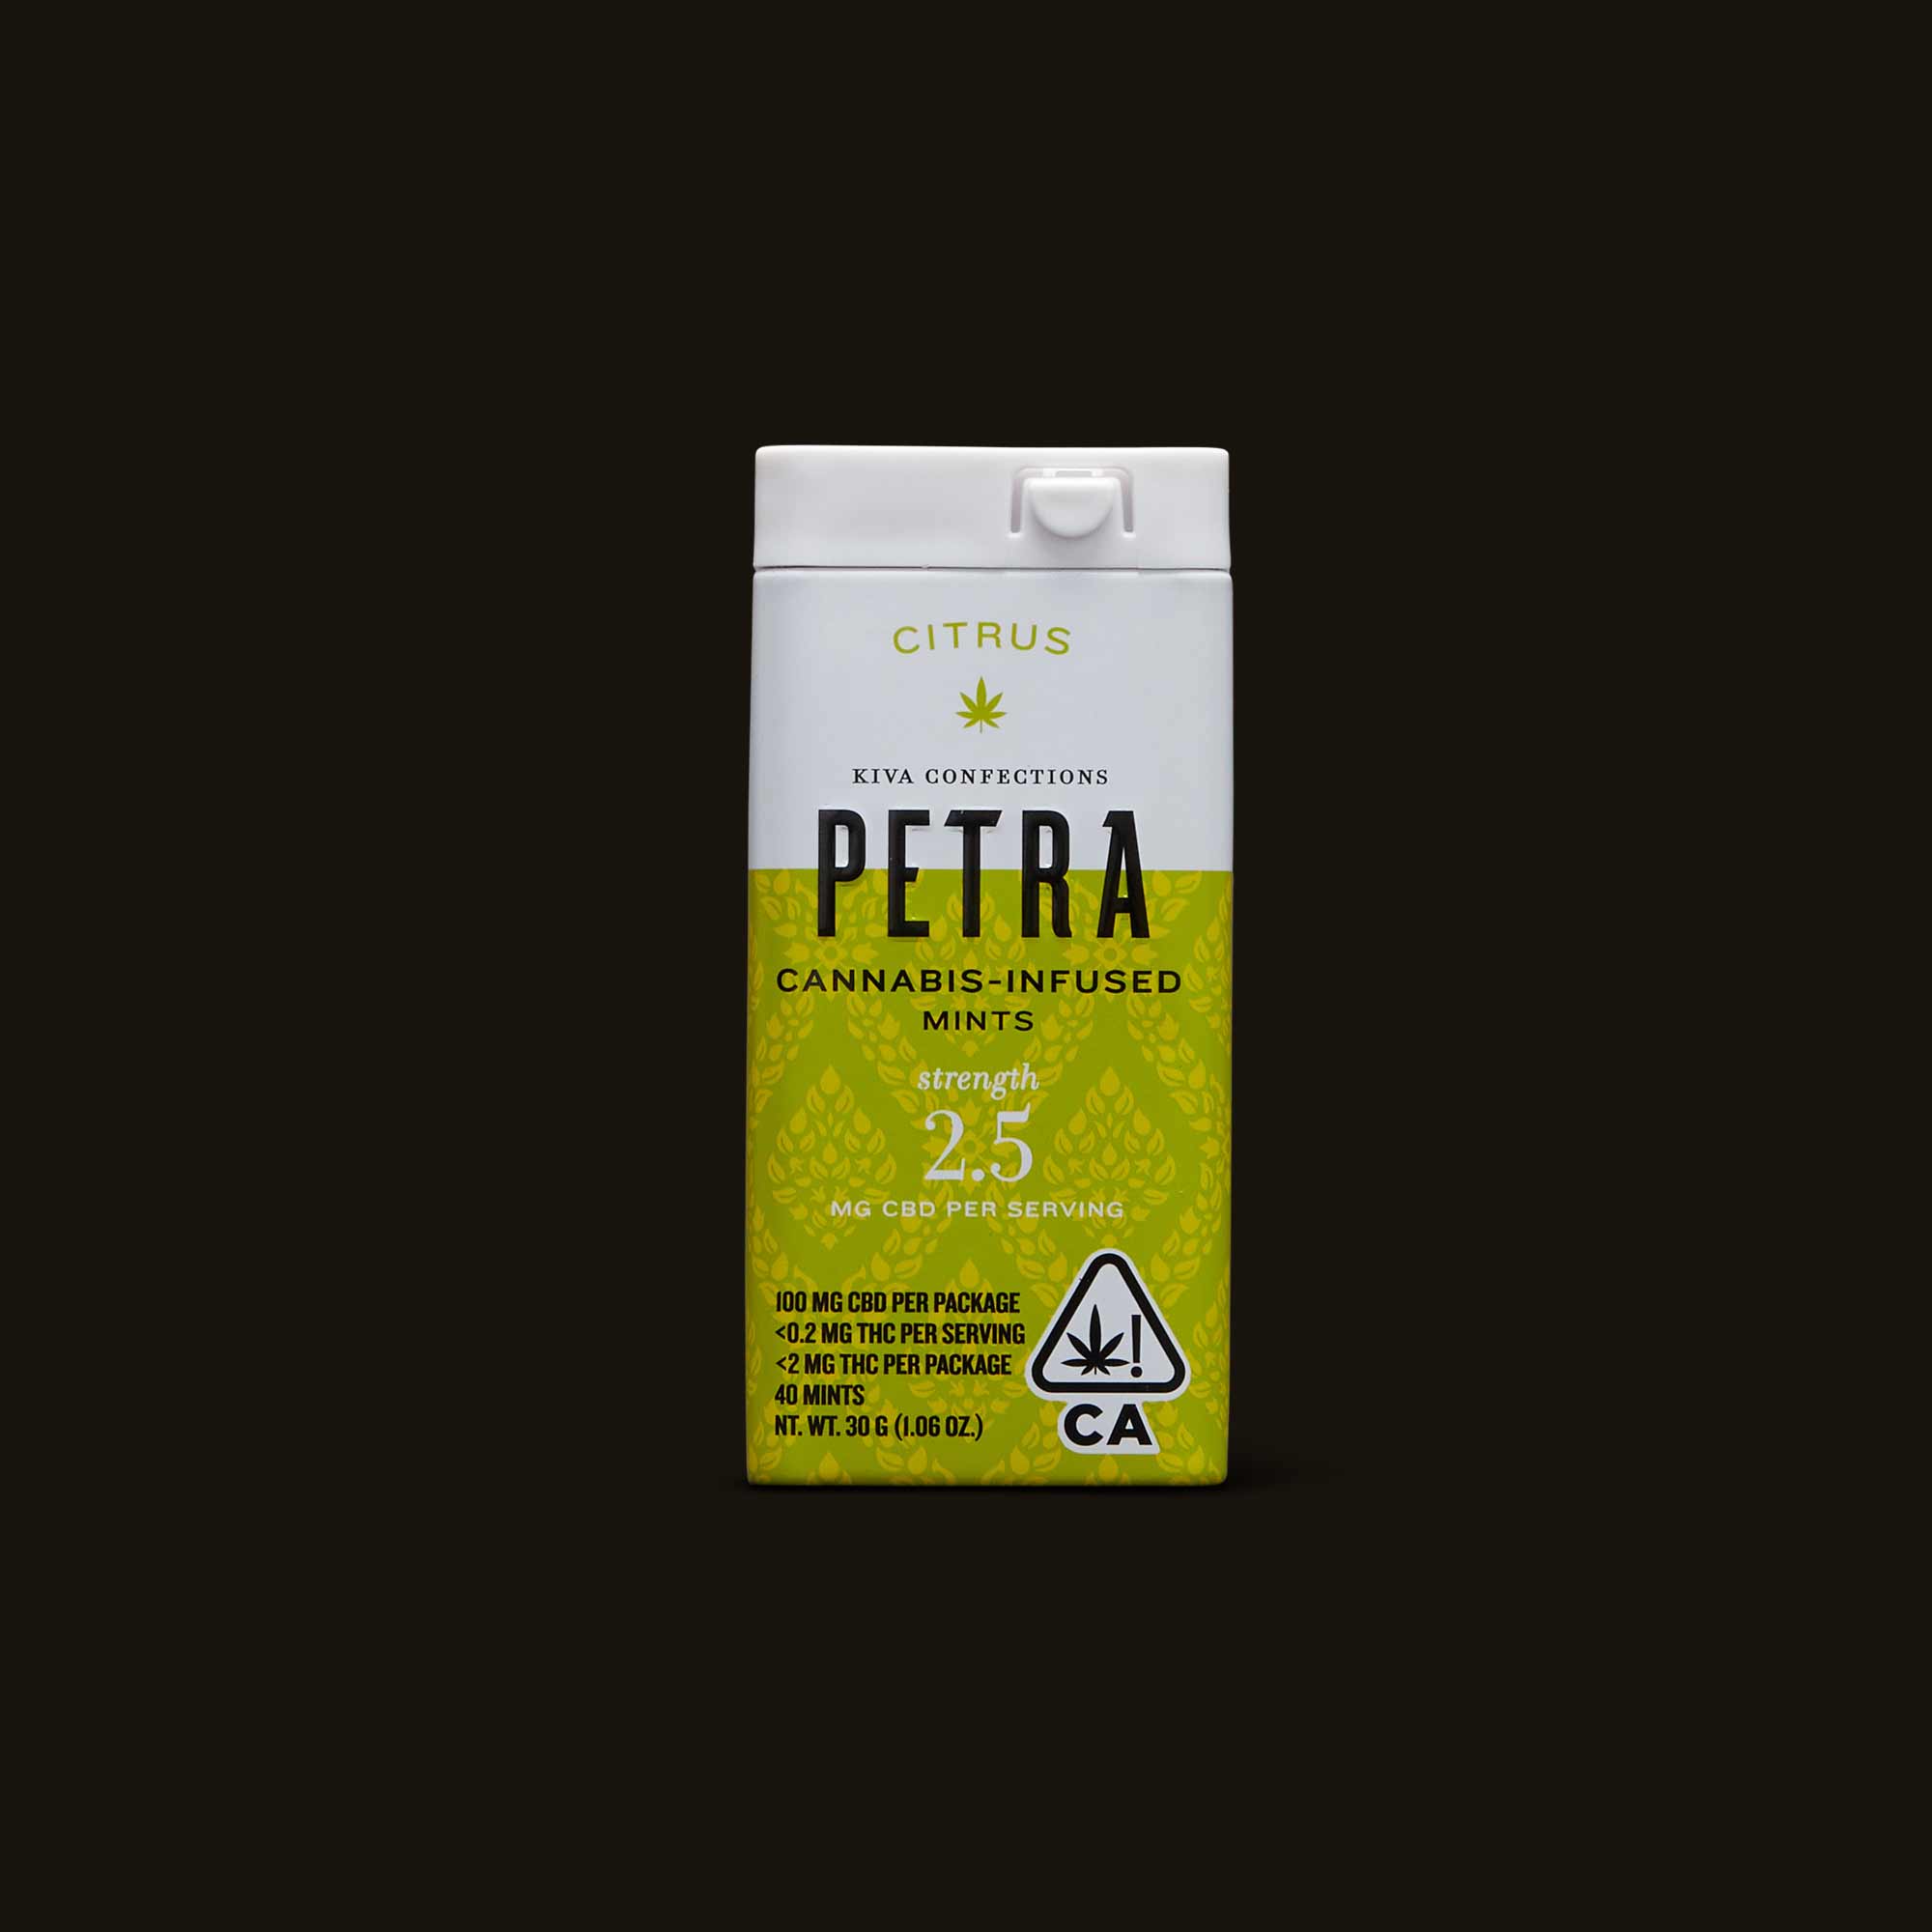 Kiva-Citrus-Petra-Mints-Front-CA-1601-793359